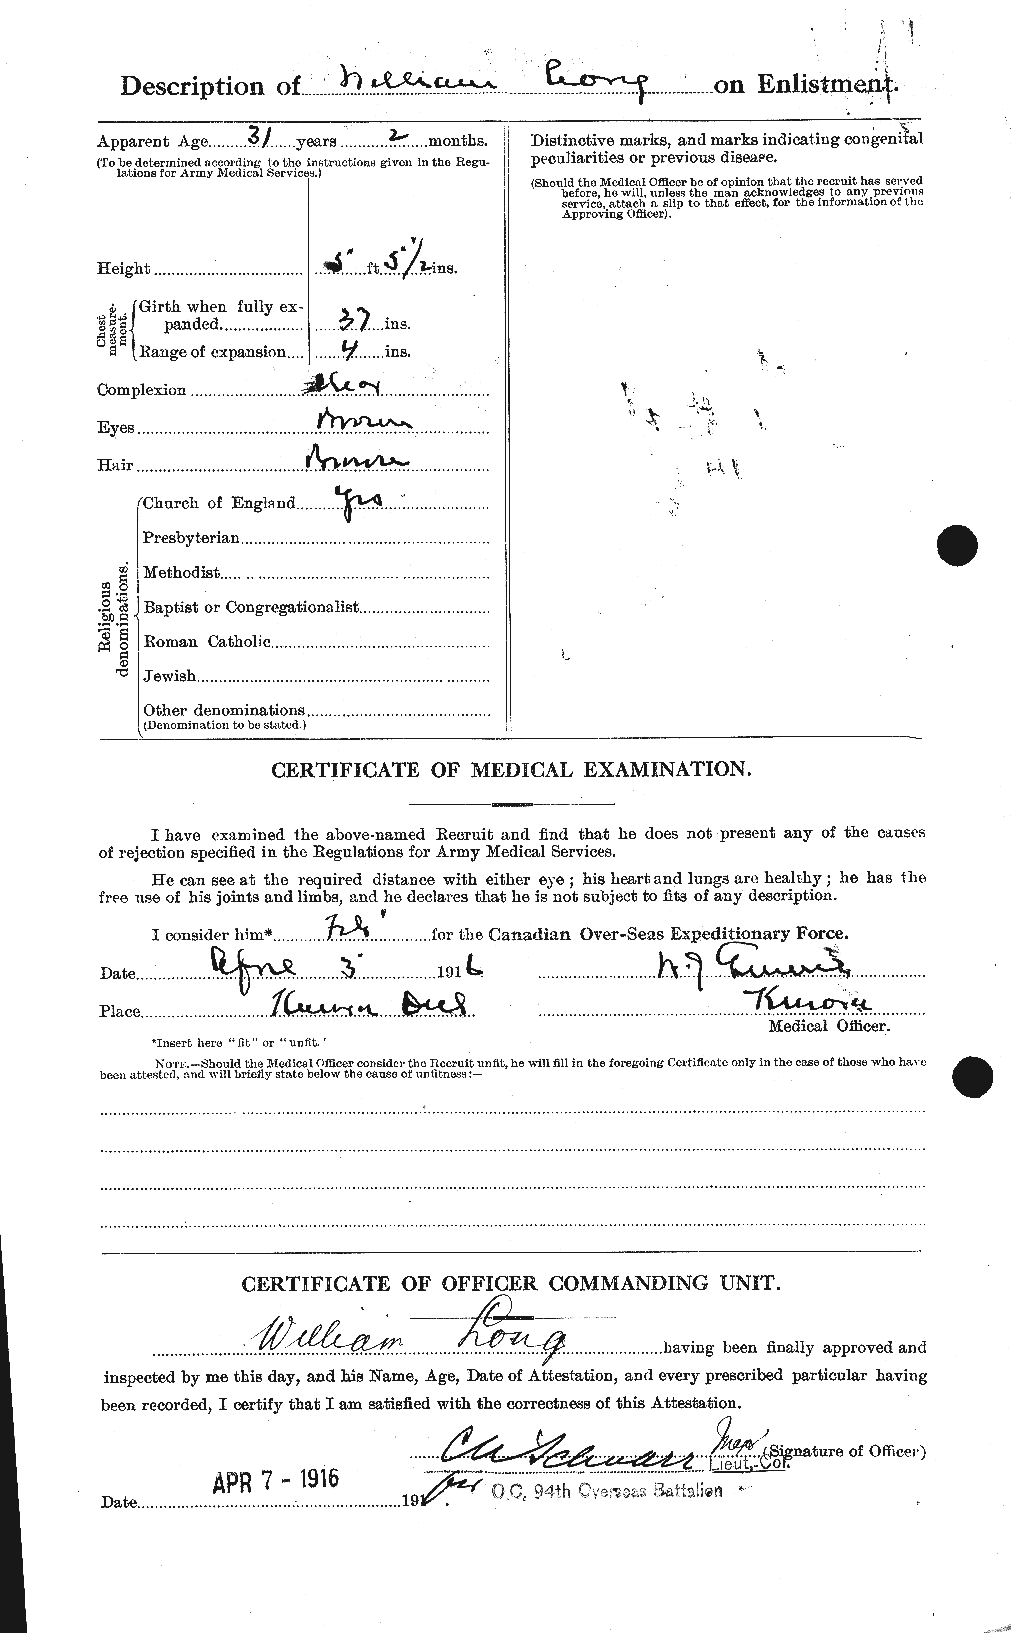 Dossiers du Personnel de la Première Guerre mondiale - CEC 058077b